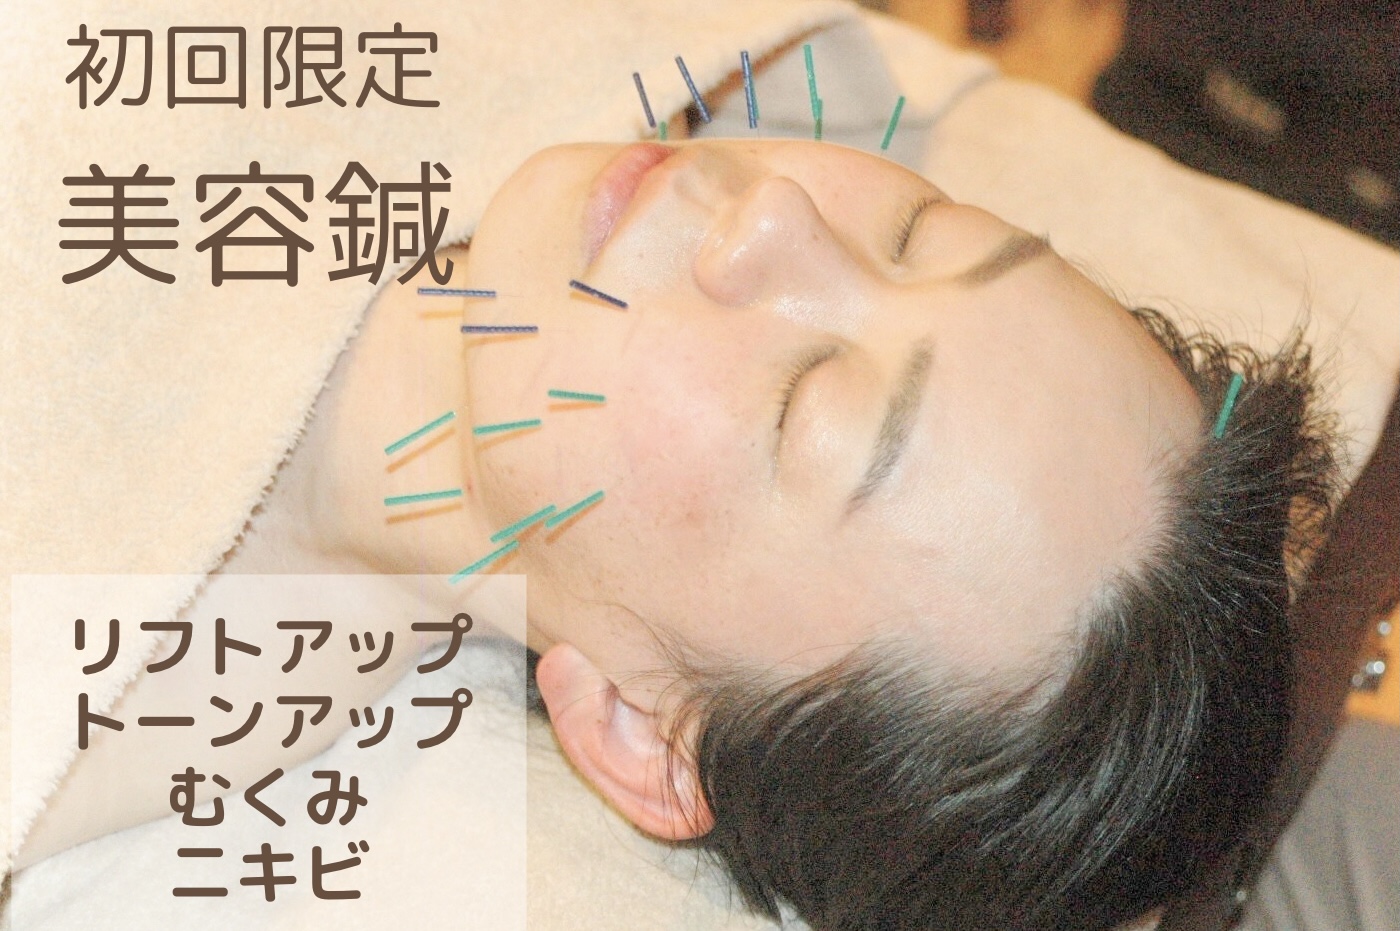 はりきゅう院mashiro 【初回限定】美容鍼灸-トライアルコース-のメニュー画像